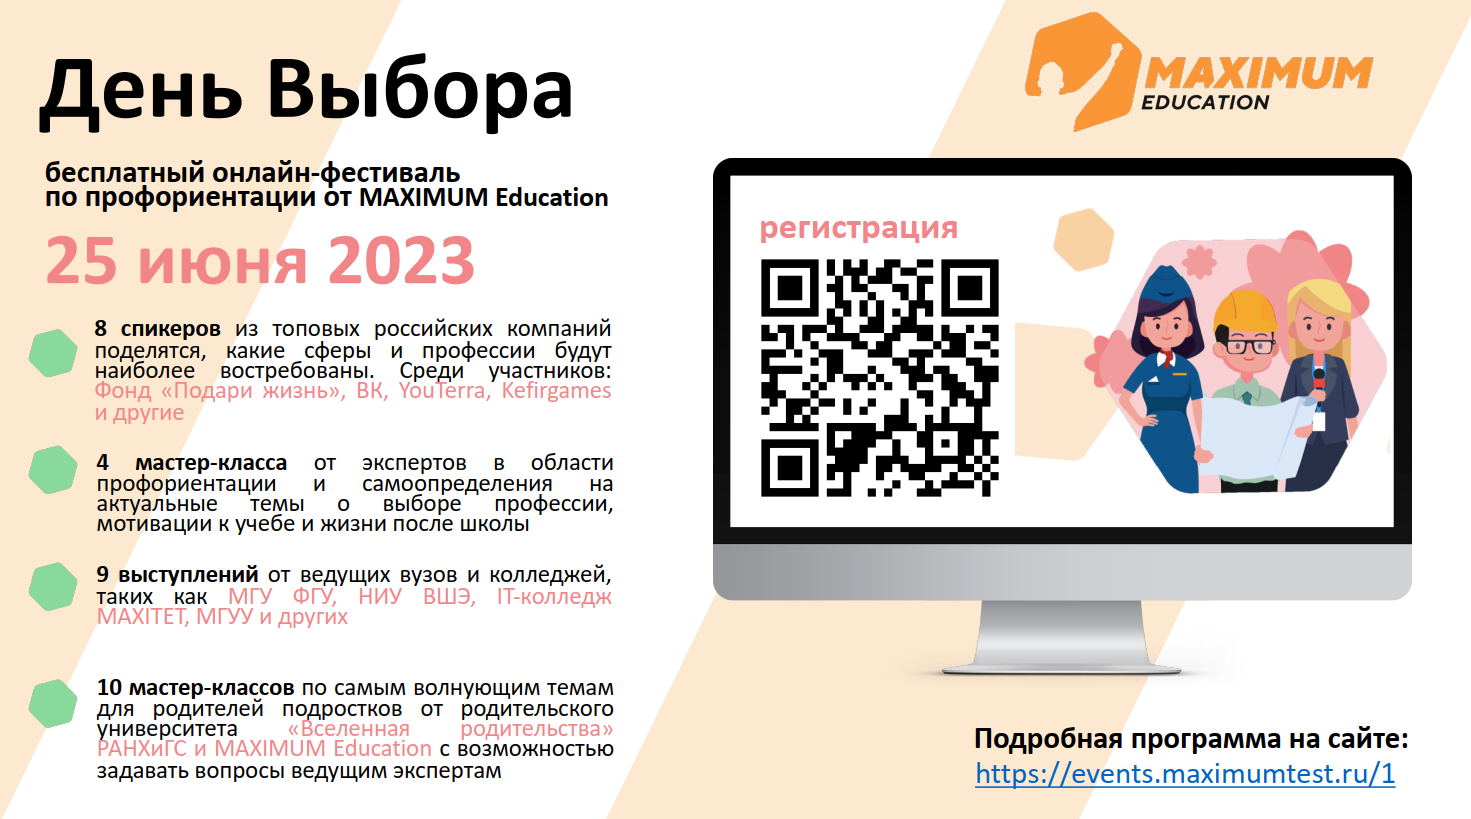 О всероссийском онлайн-фестивале по профориентации «День Выбора»